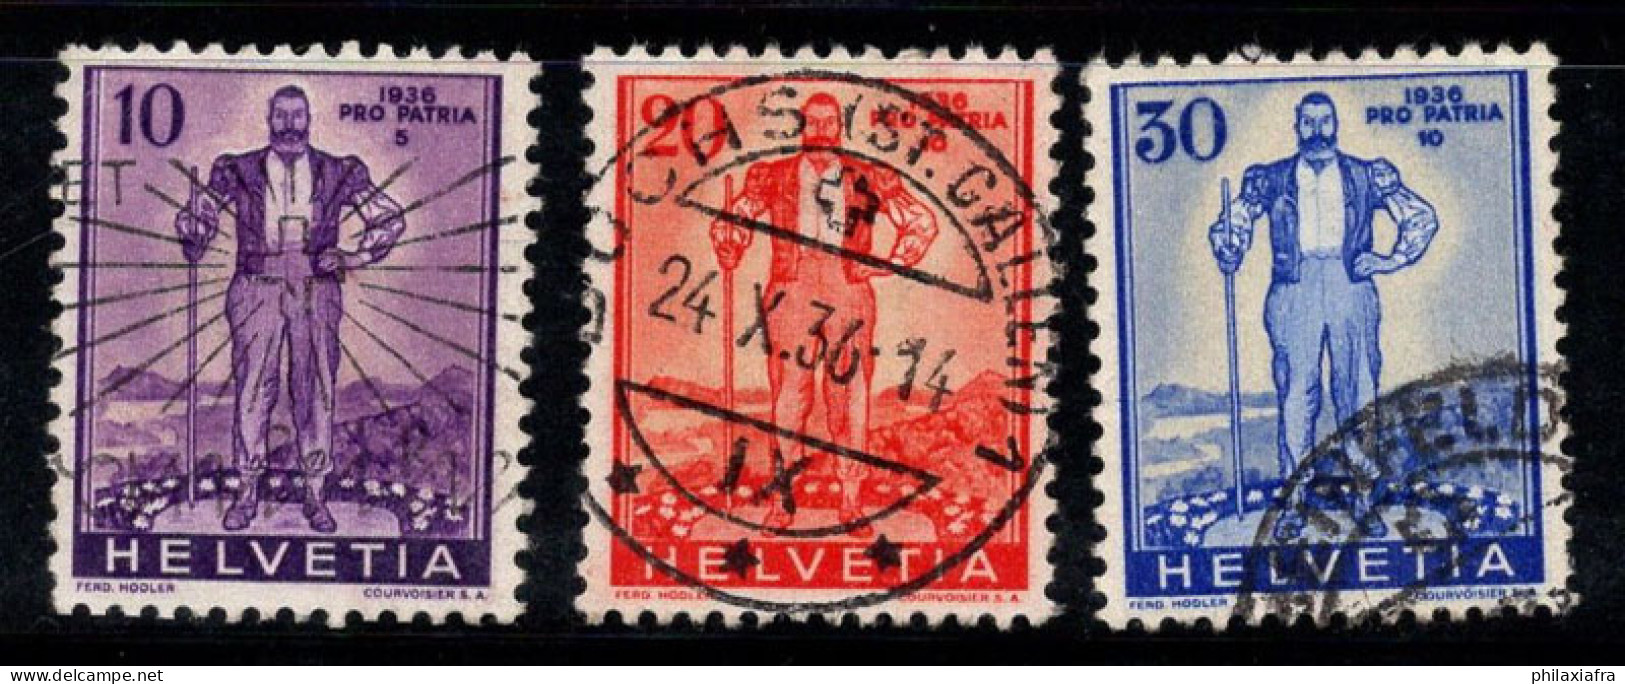 Suisse 1936 Mi. 294-296 Oblitéré 100% Pro Patria - Used Stamps